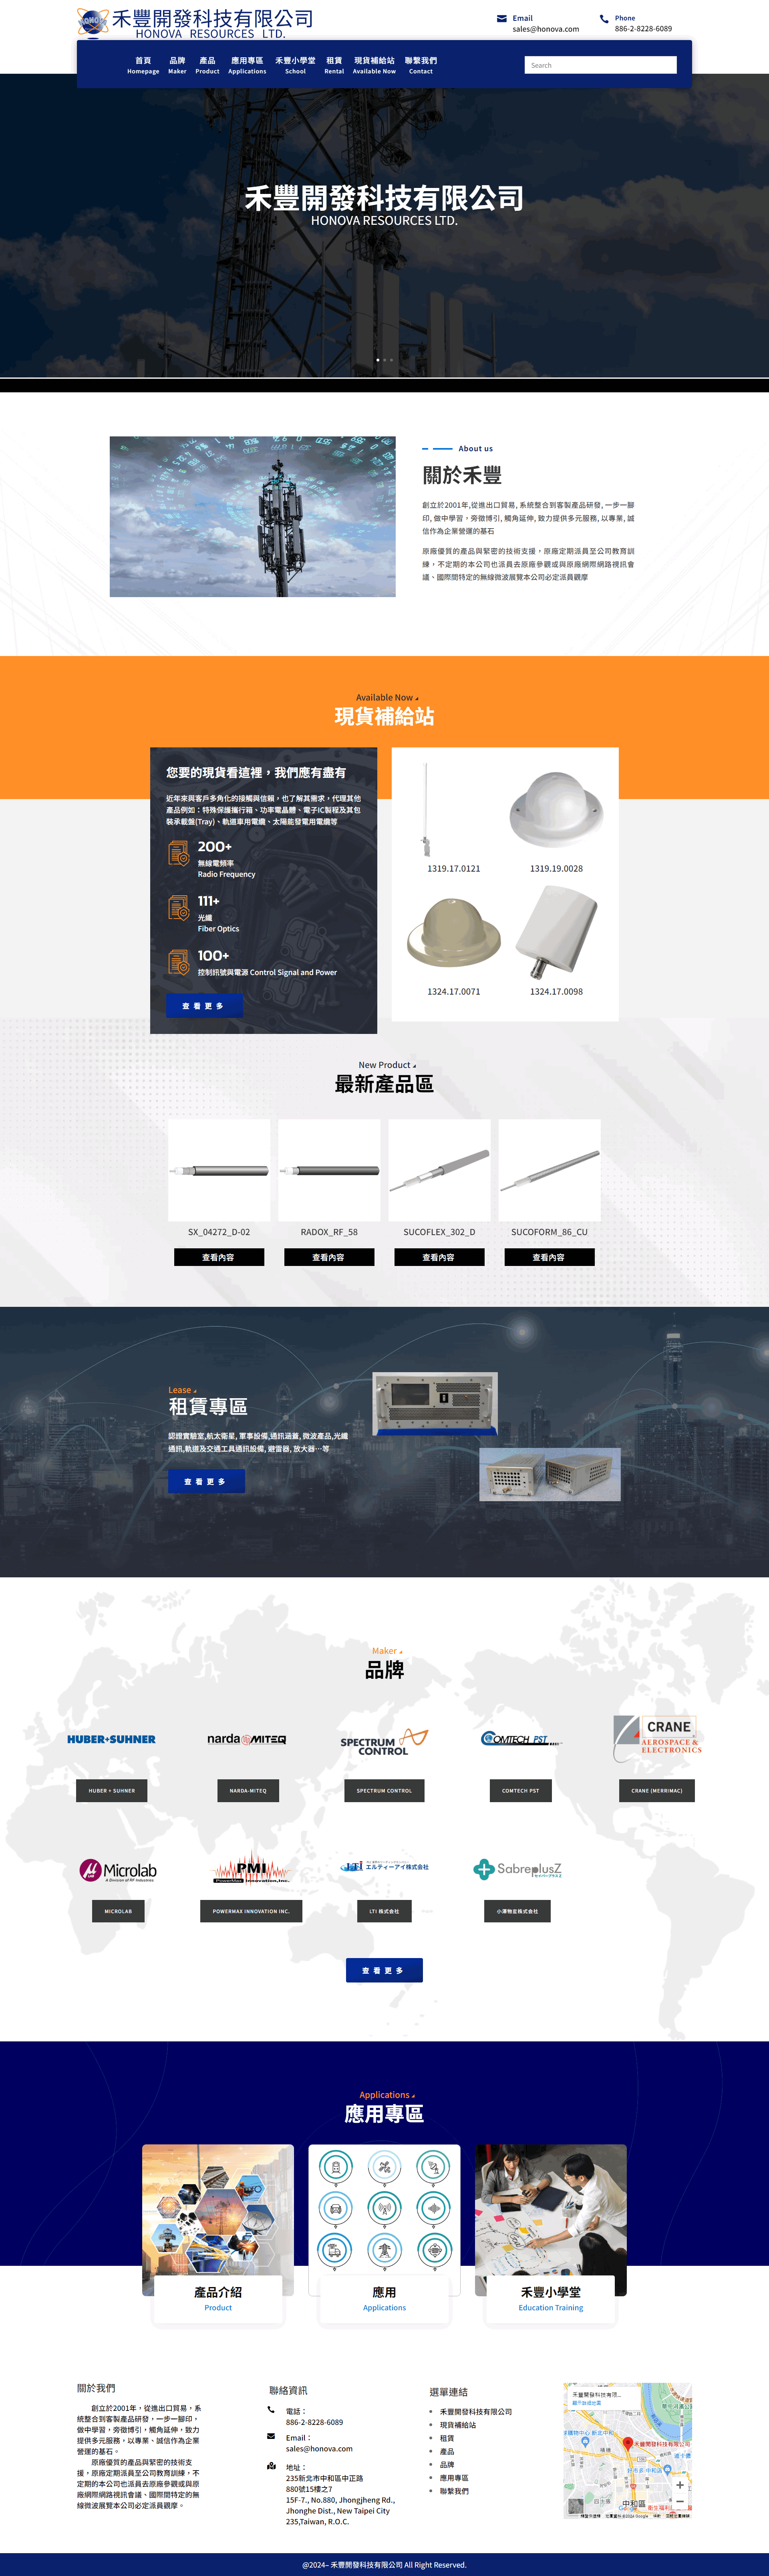 禾豐開發科技有限公司，製造與營造業企業形象網站案例